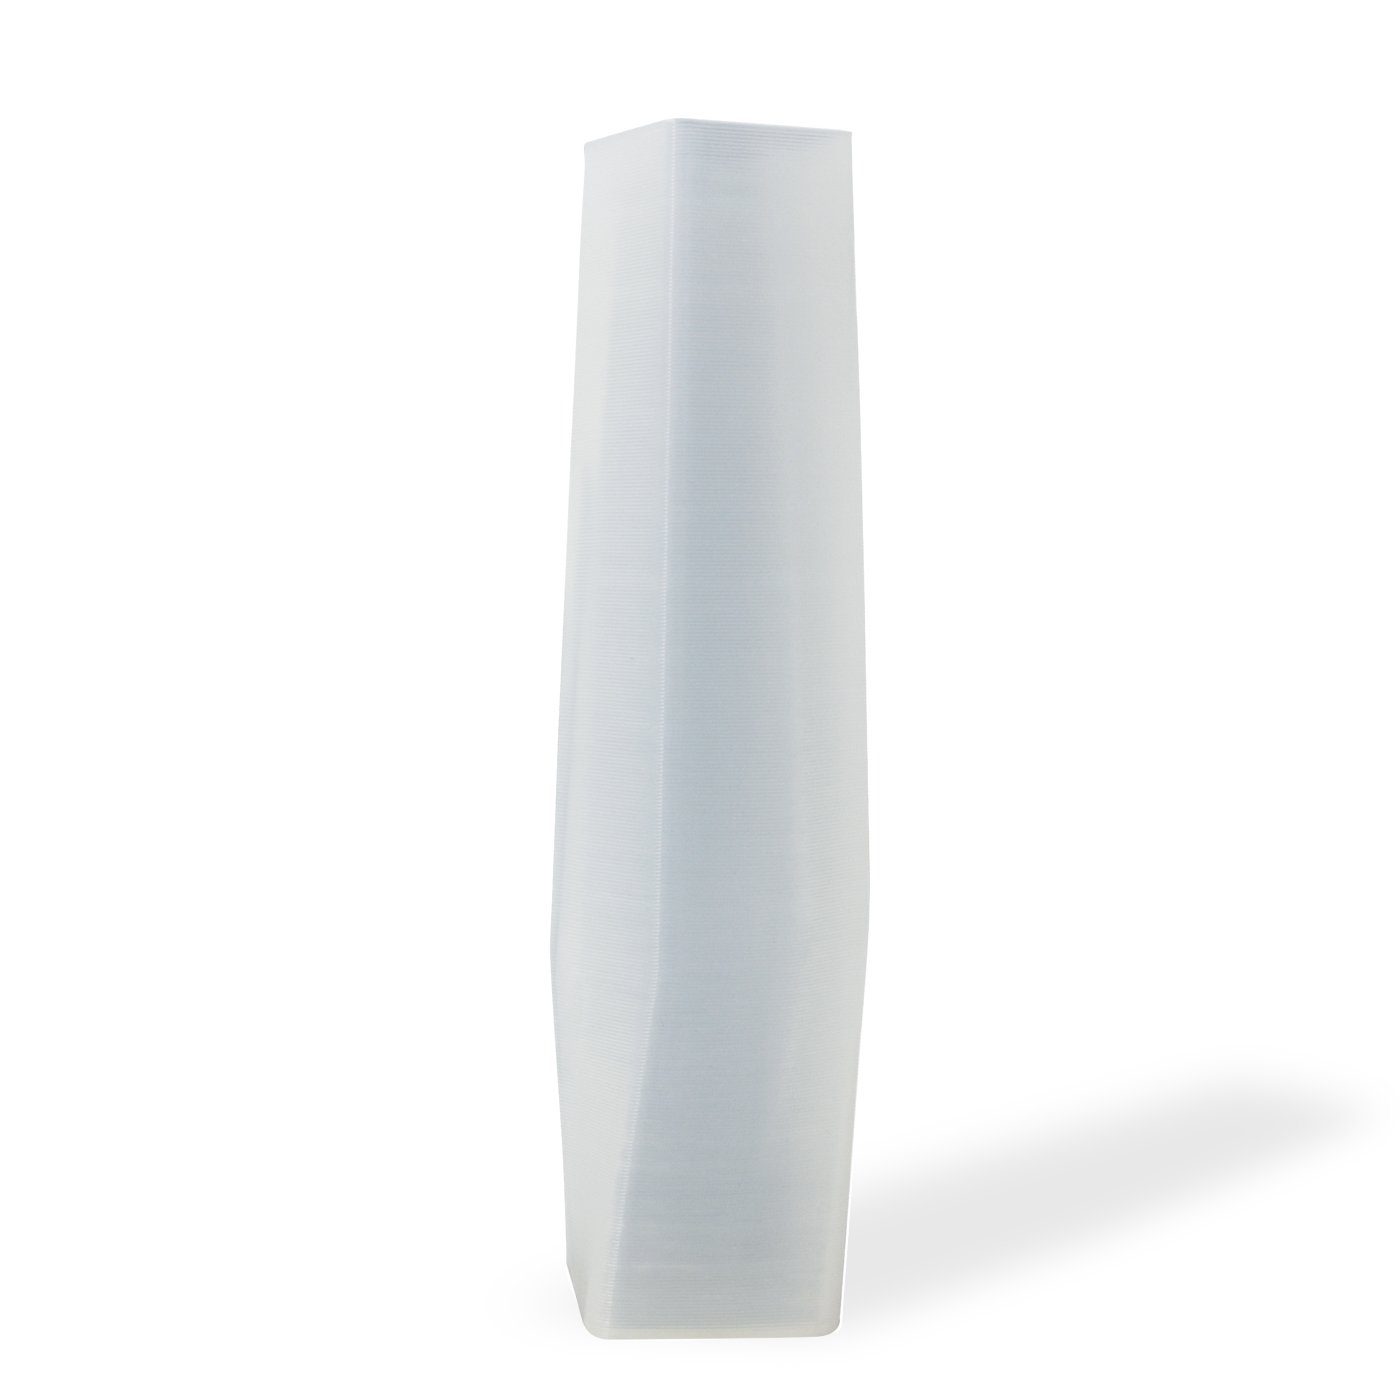 Shapes - Decorations Dekovase the vase - square (deco), 3D Vasen, viele Farben, 100% 3D-Druck (Einzelmodell, 1 Vase), Durchsichtig; Leichte Struktur innerhalb des Materials (Rillung) Weiß